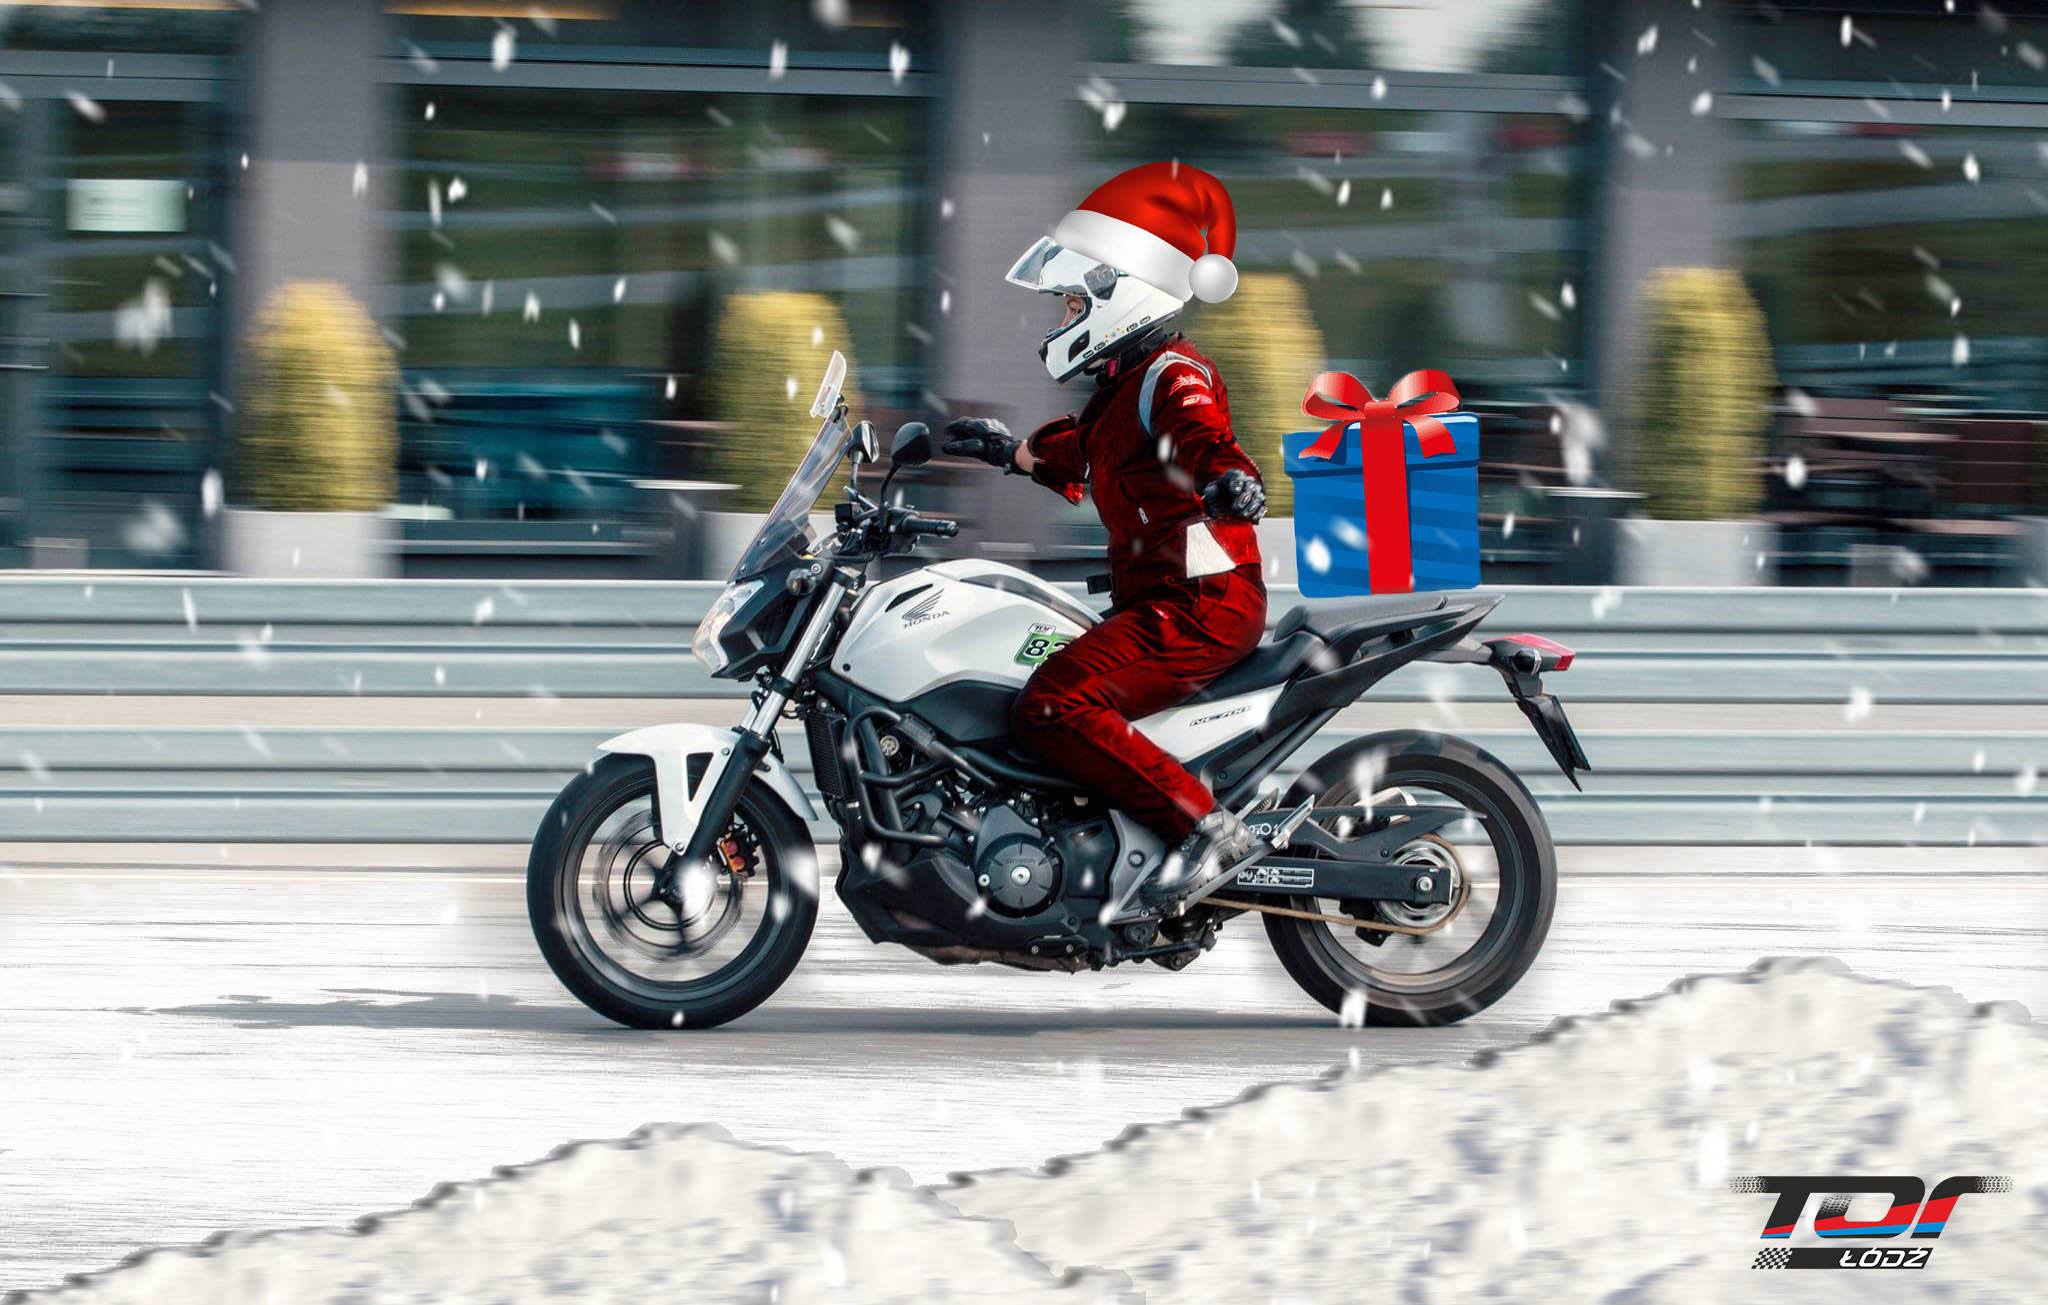 Szkolenie motocyklowe na Torze Łódź -10% - Promocja Świąteczna